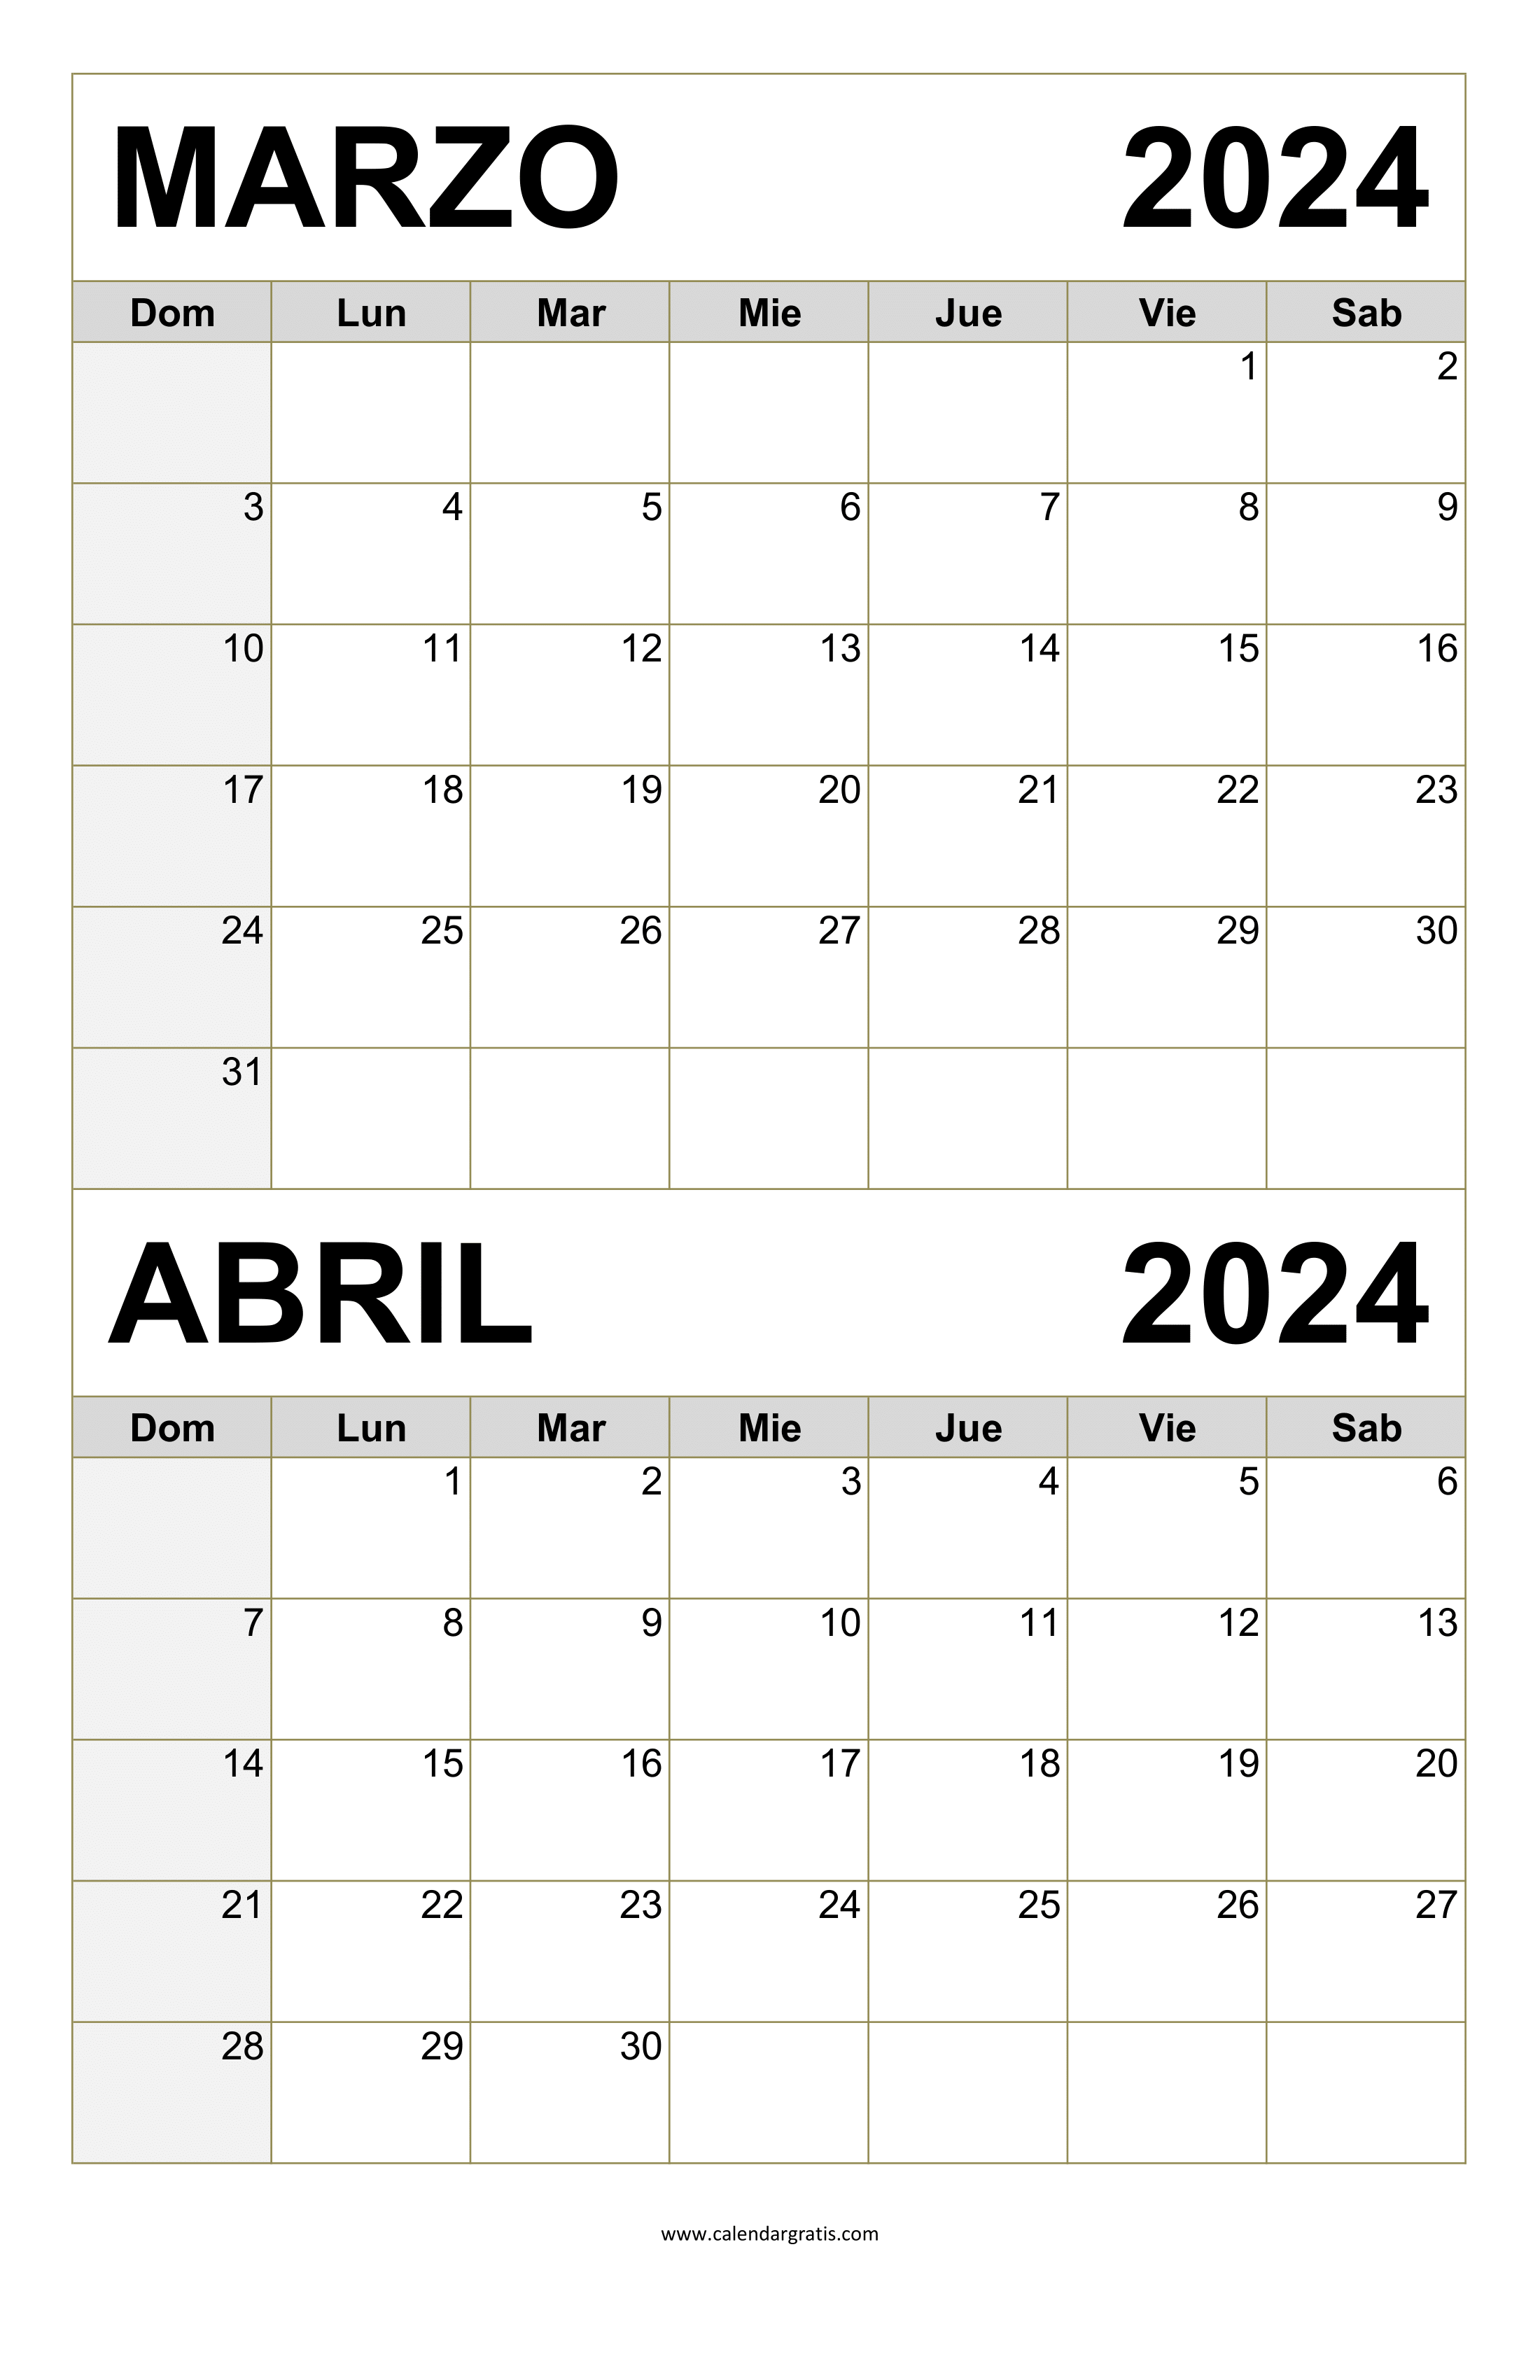 marzo de 2024 calendario gratis